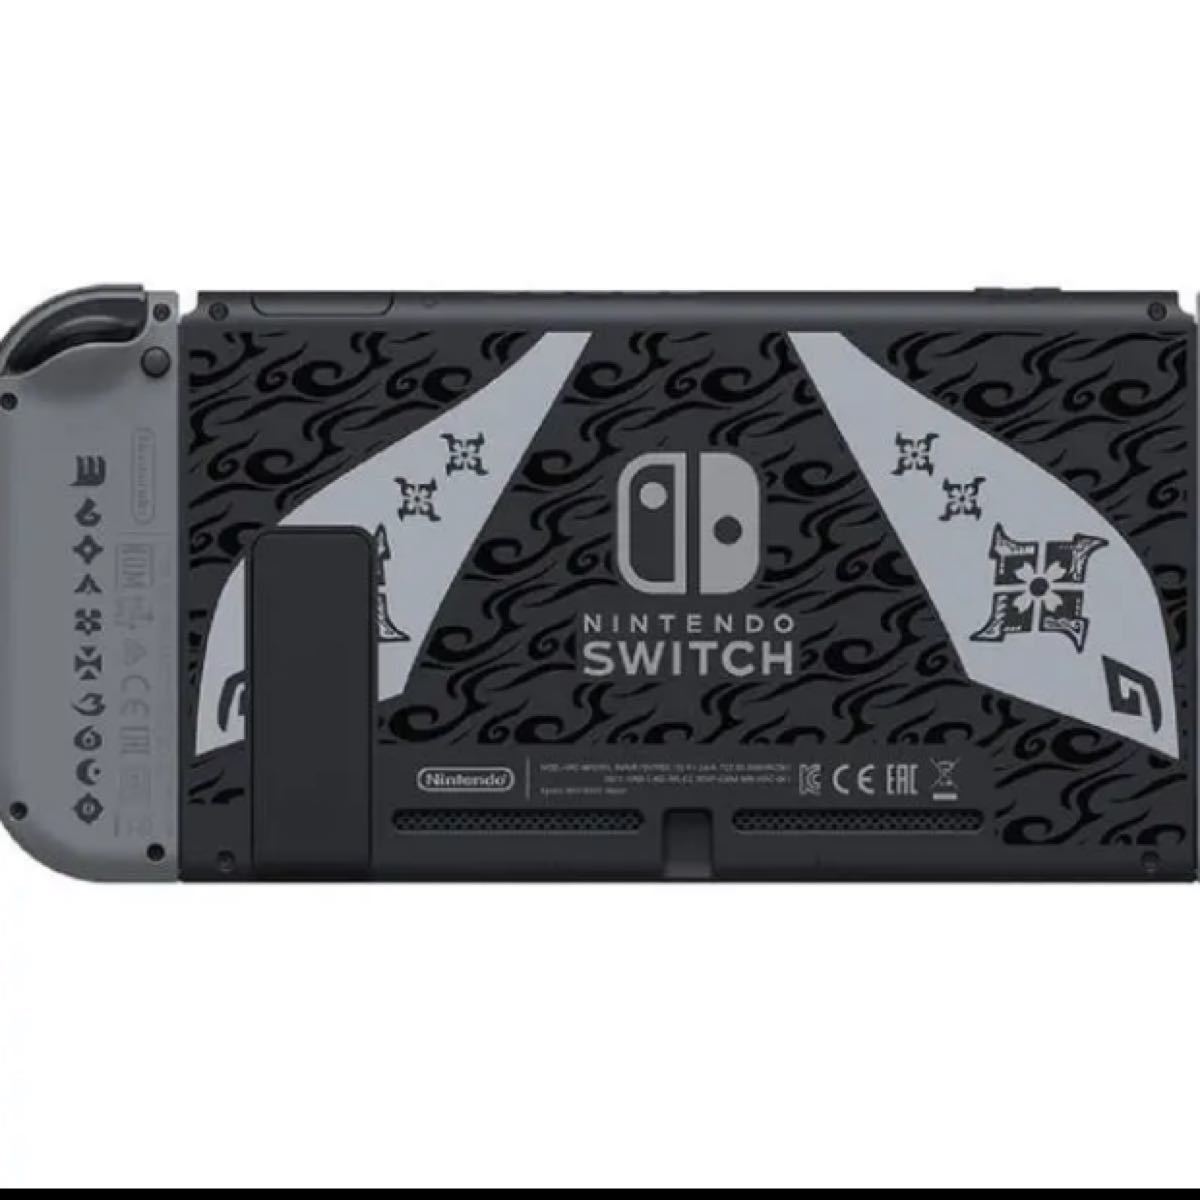 【送料無料・新品未開封】Nintendo Switch モンスターハンターライズ スペシャルエディション モンハン 本体 限定版